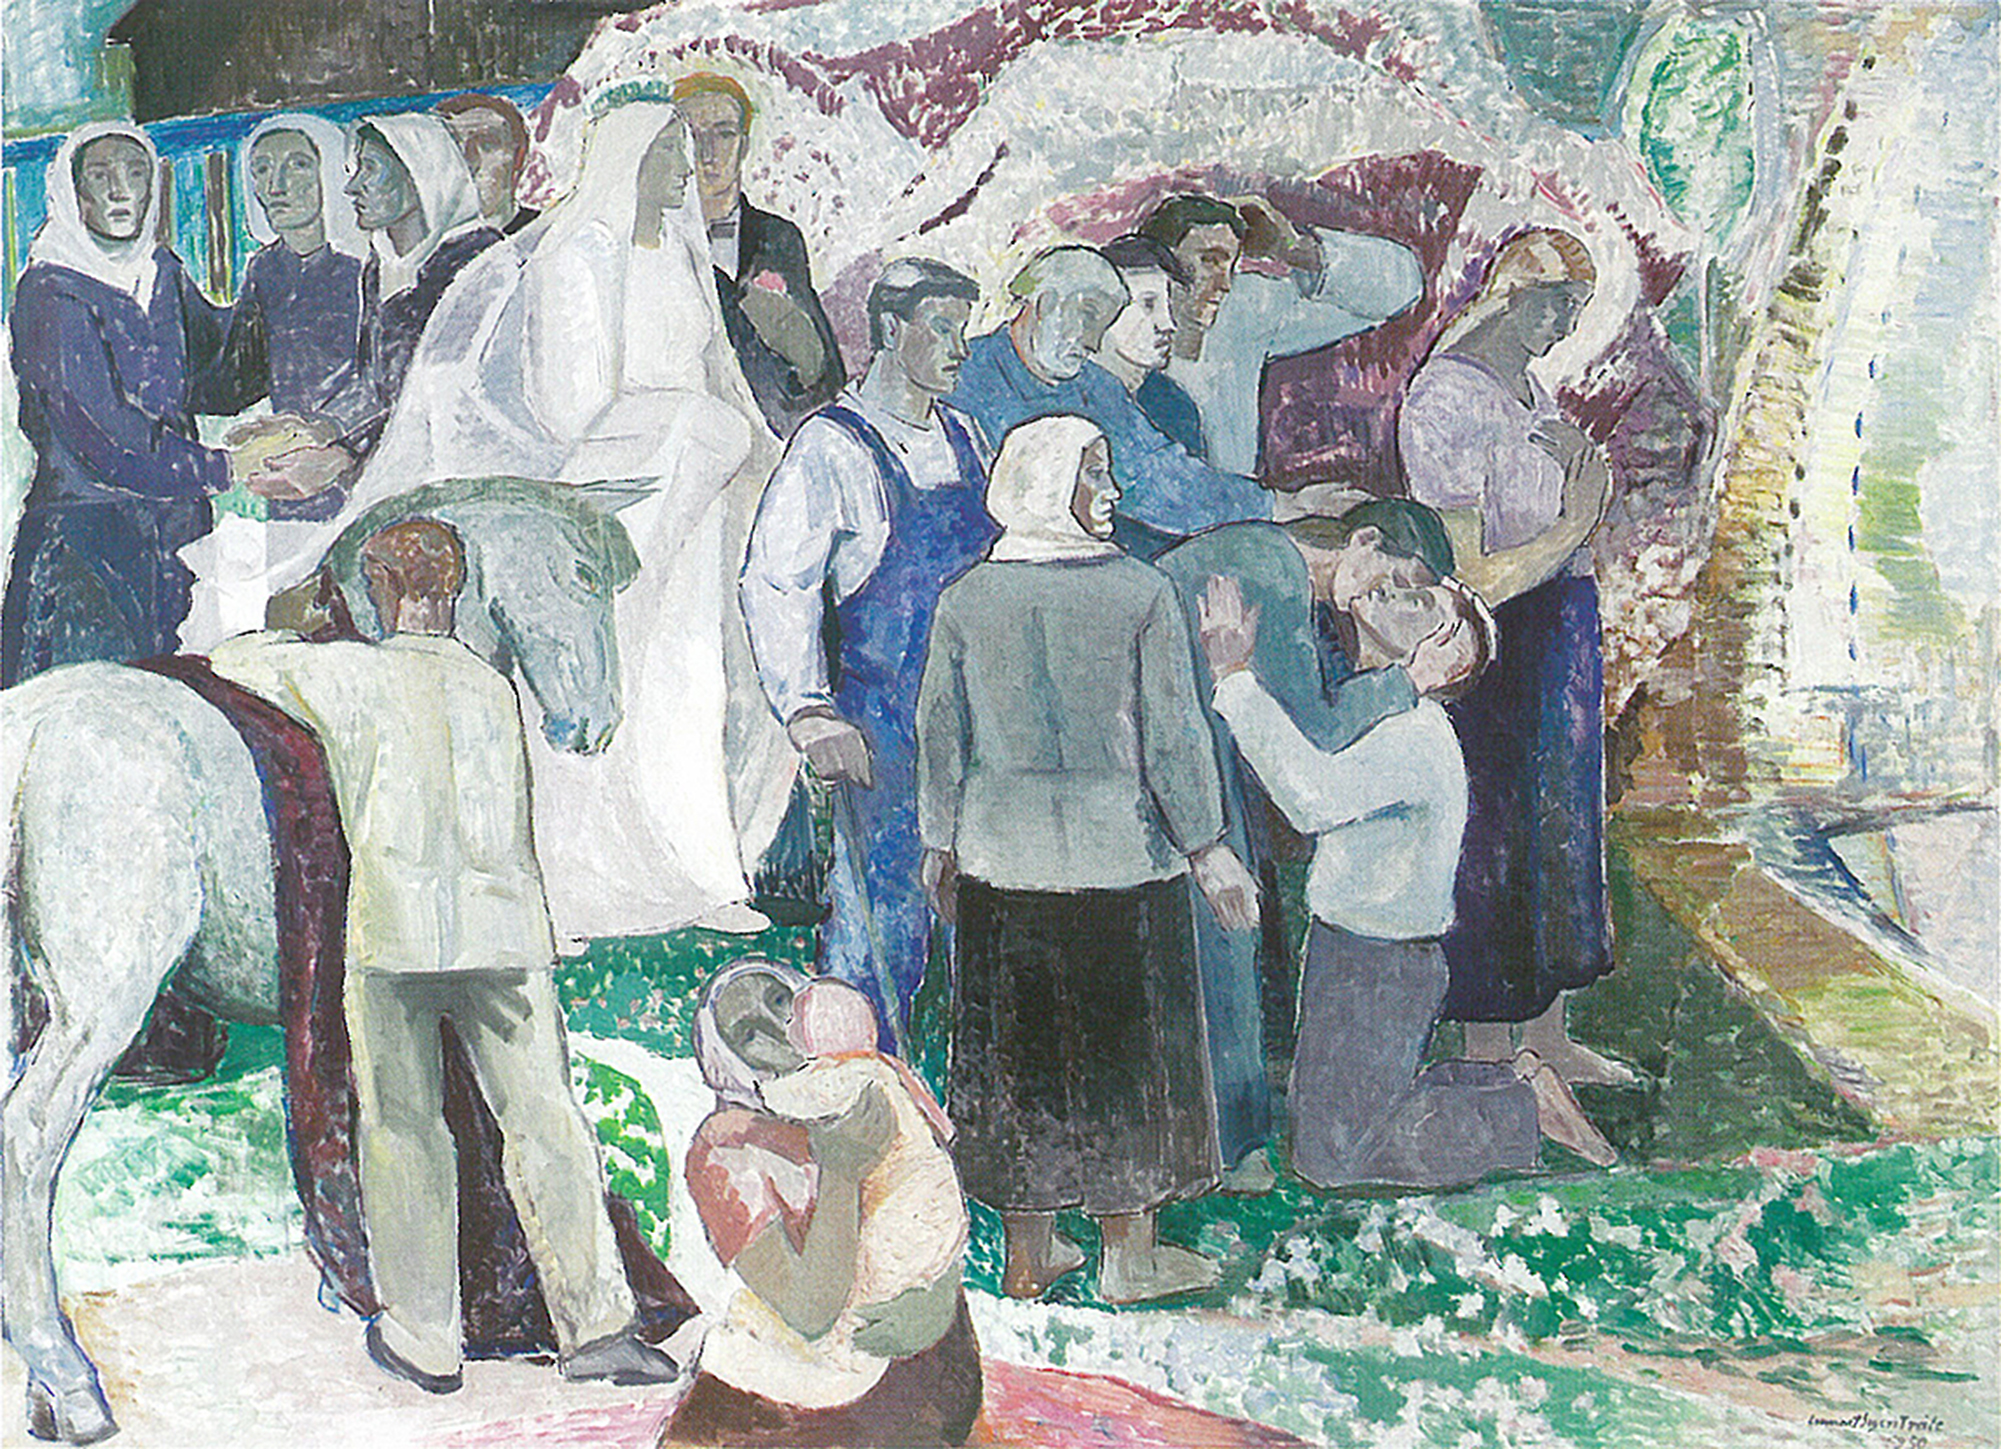 Lennart Segerstrålen maalaus "Elämän lähde",ihmisjoukon keskellä mies polvillaan.